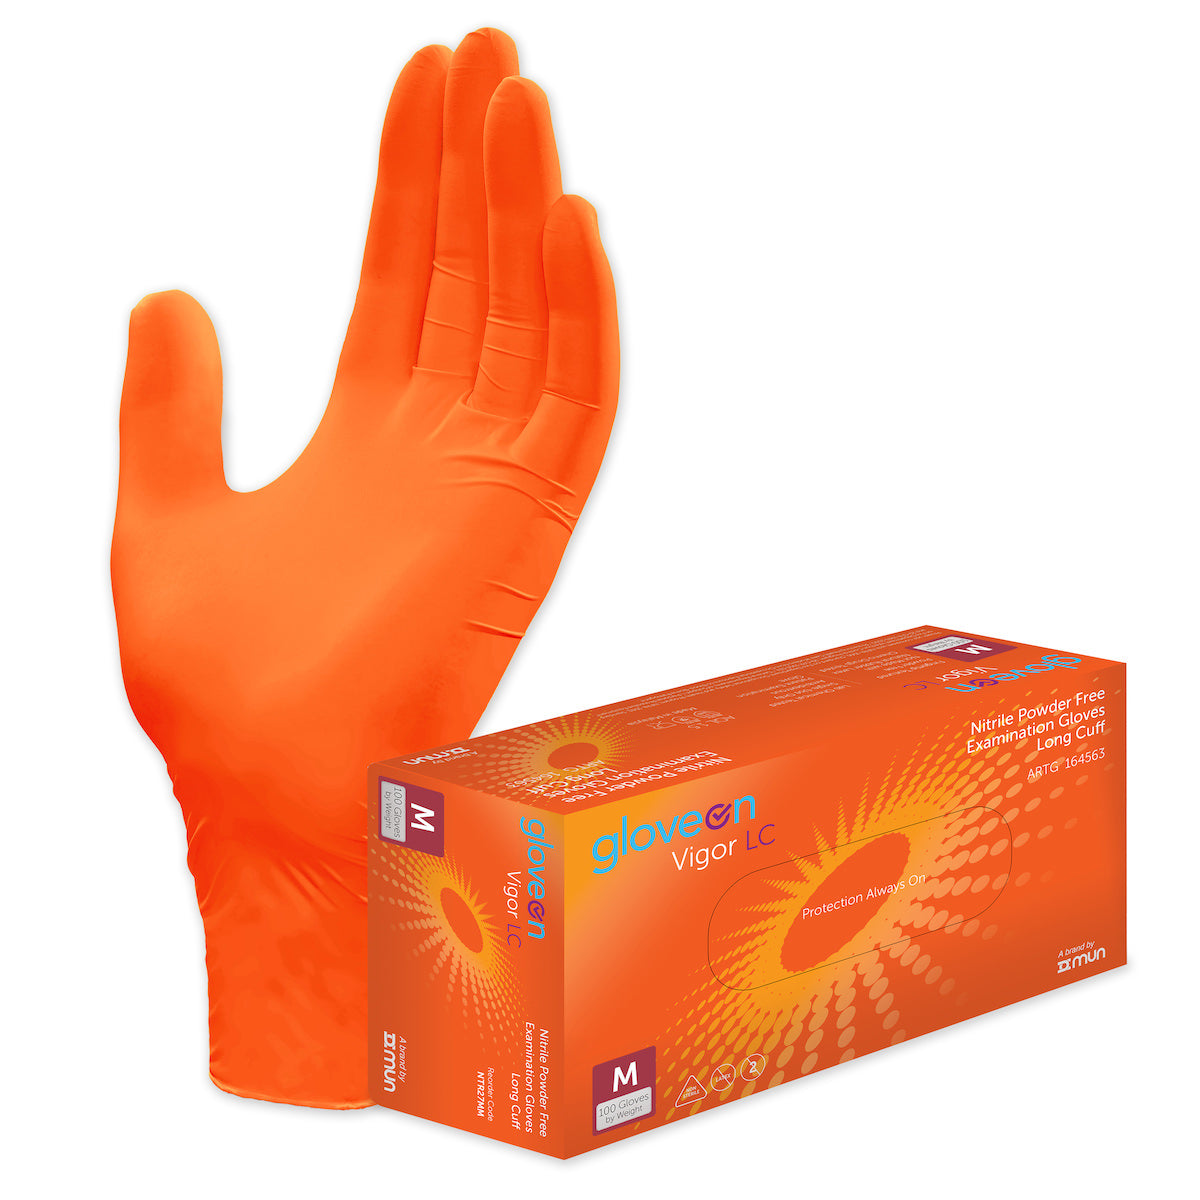 GloveOn® Vigor Nitrile Gloves NTR27 (Carton of 10 Boxes)